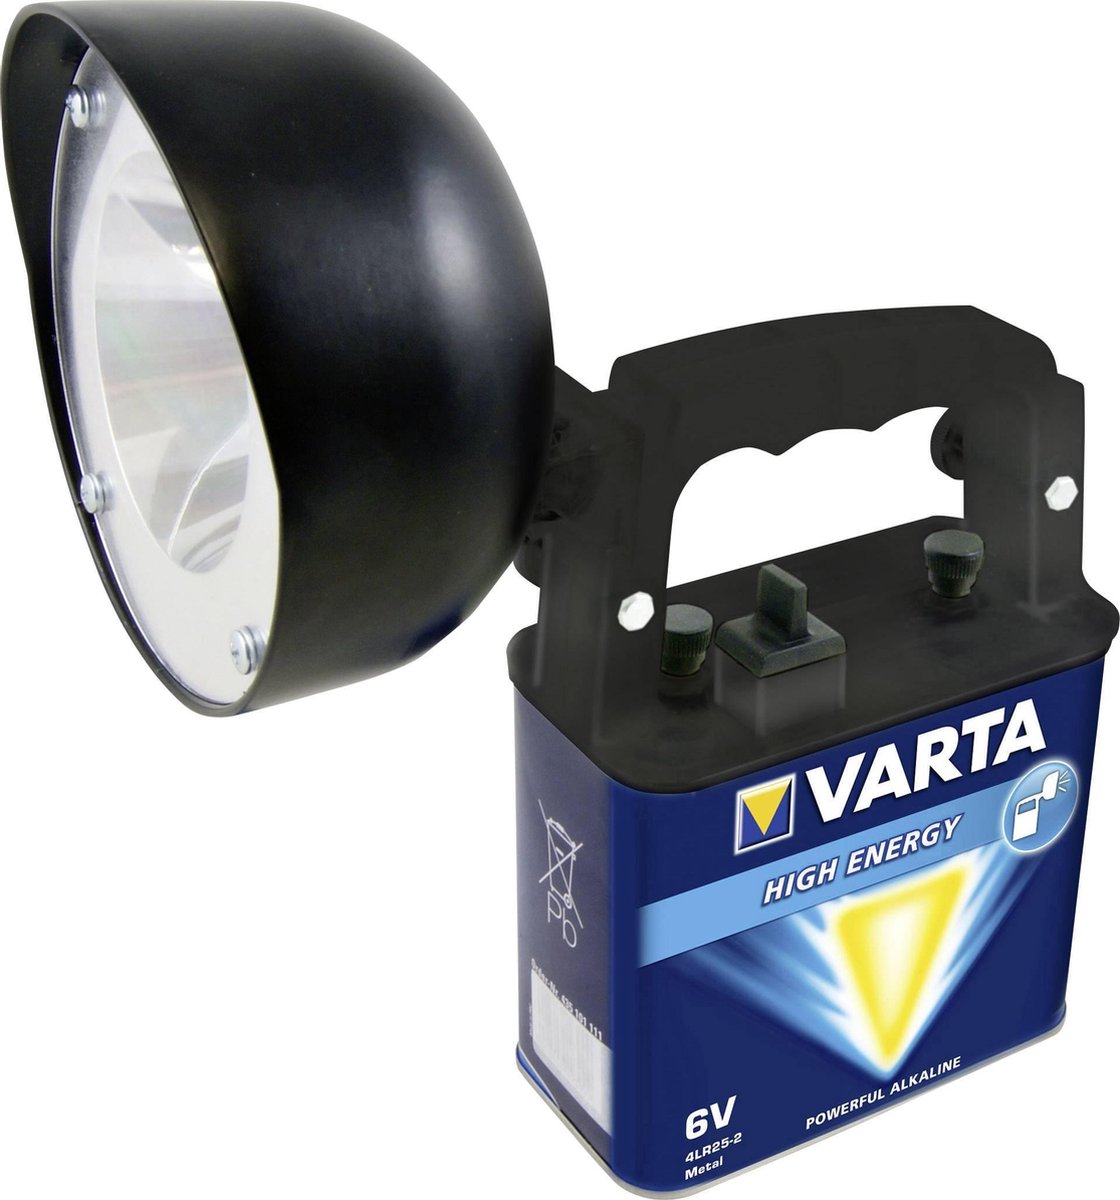 Varta Work Light BL40 18660101421 Werklamp LED 190 lm